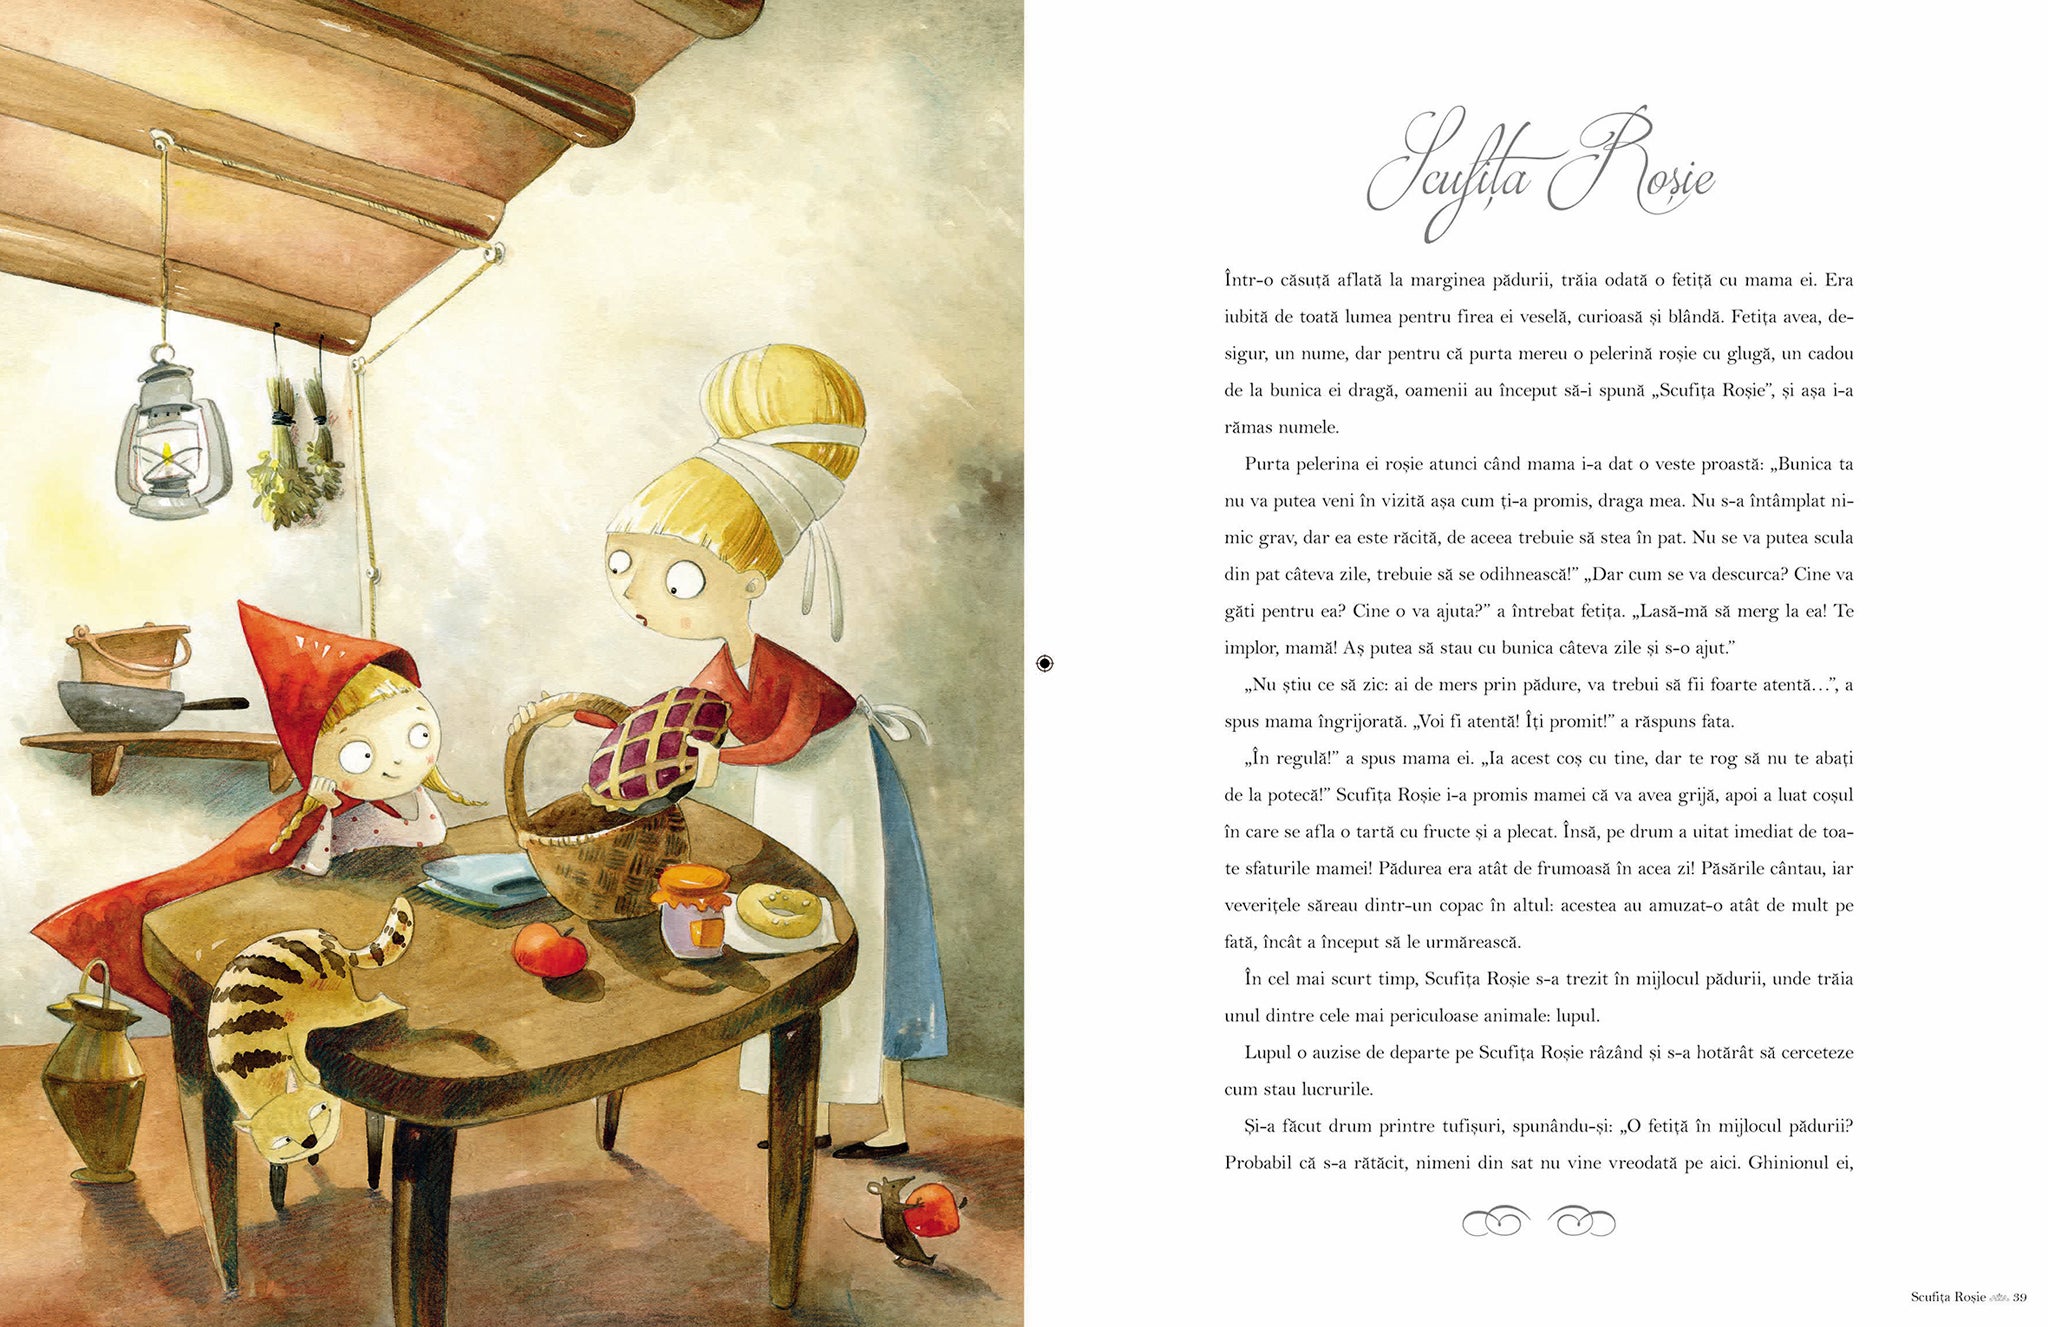 Cele mai frumoase povești de Frații Grimm, Charles Perrault și Hans Christian Andersen